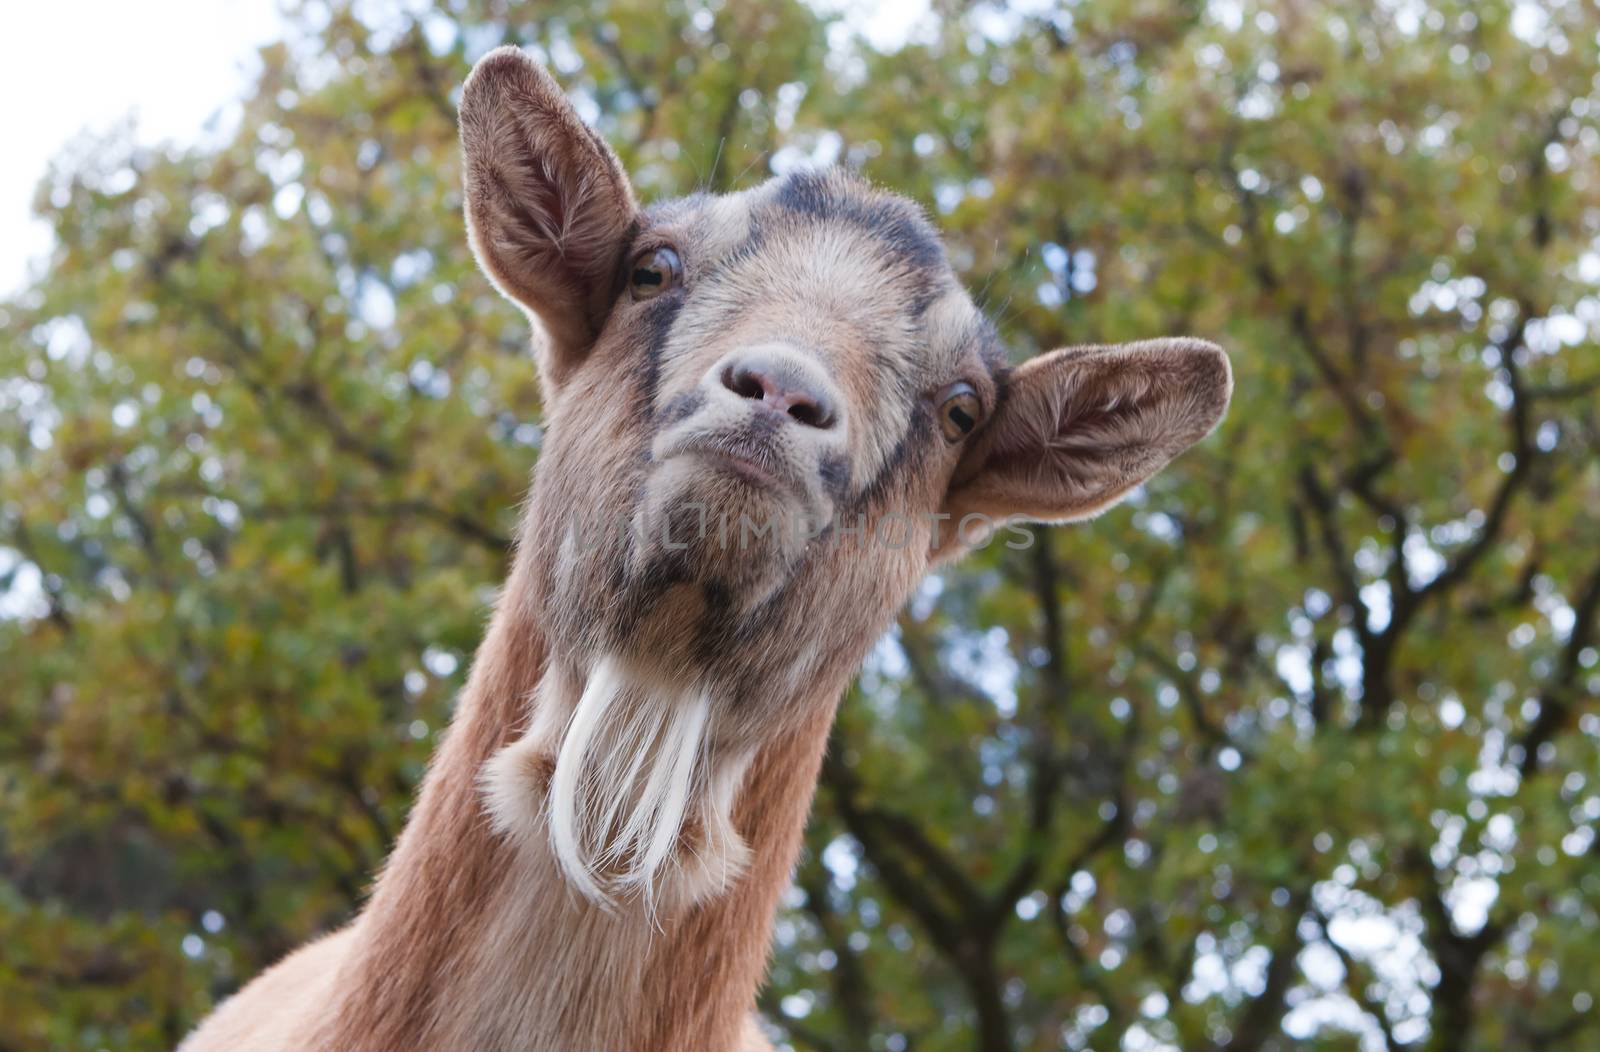 Billy Goat Portrait by Coffee999